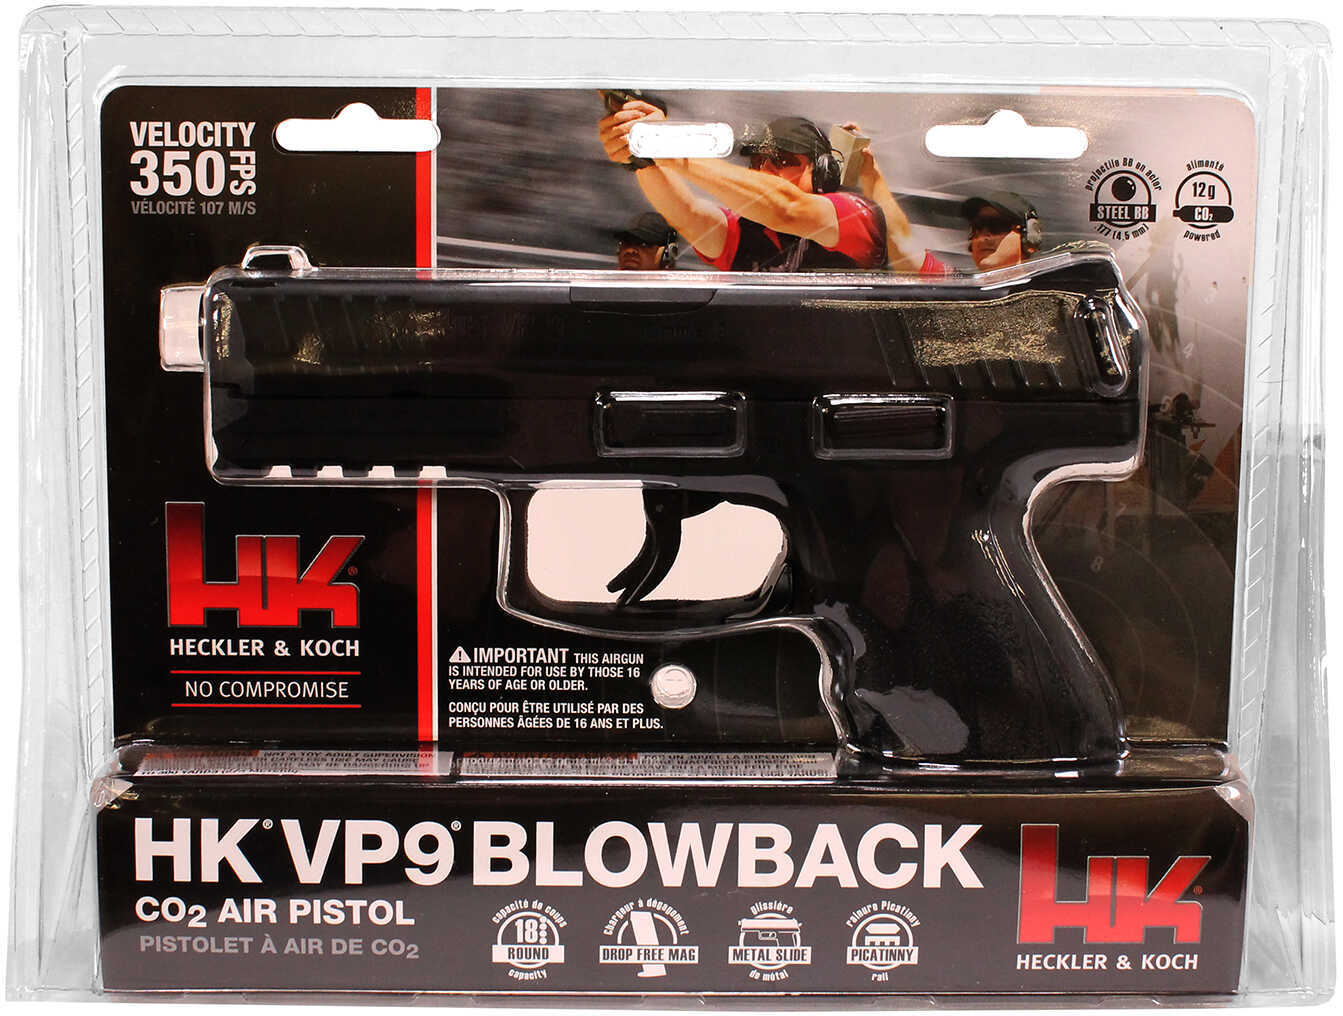 RWS/Umarex Heckler & Koch VP9 Air Pistol 177 BB 350 Feet Per Second Black Finish BLOWBACK Action 18Rd 2252308